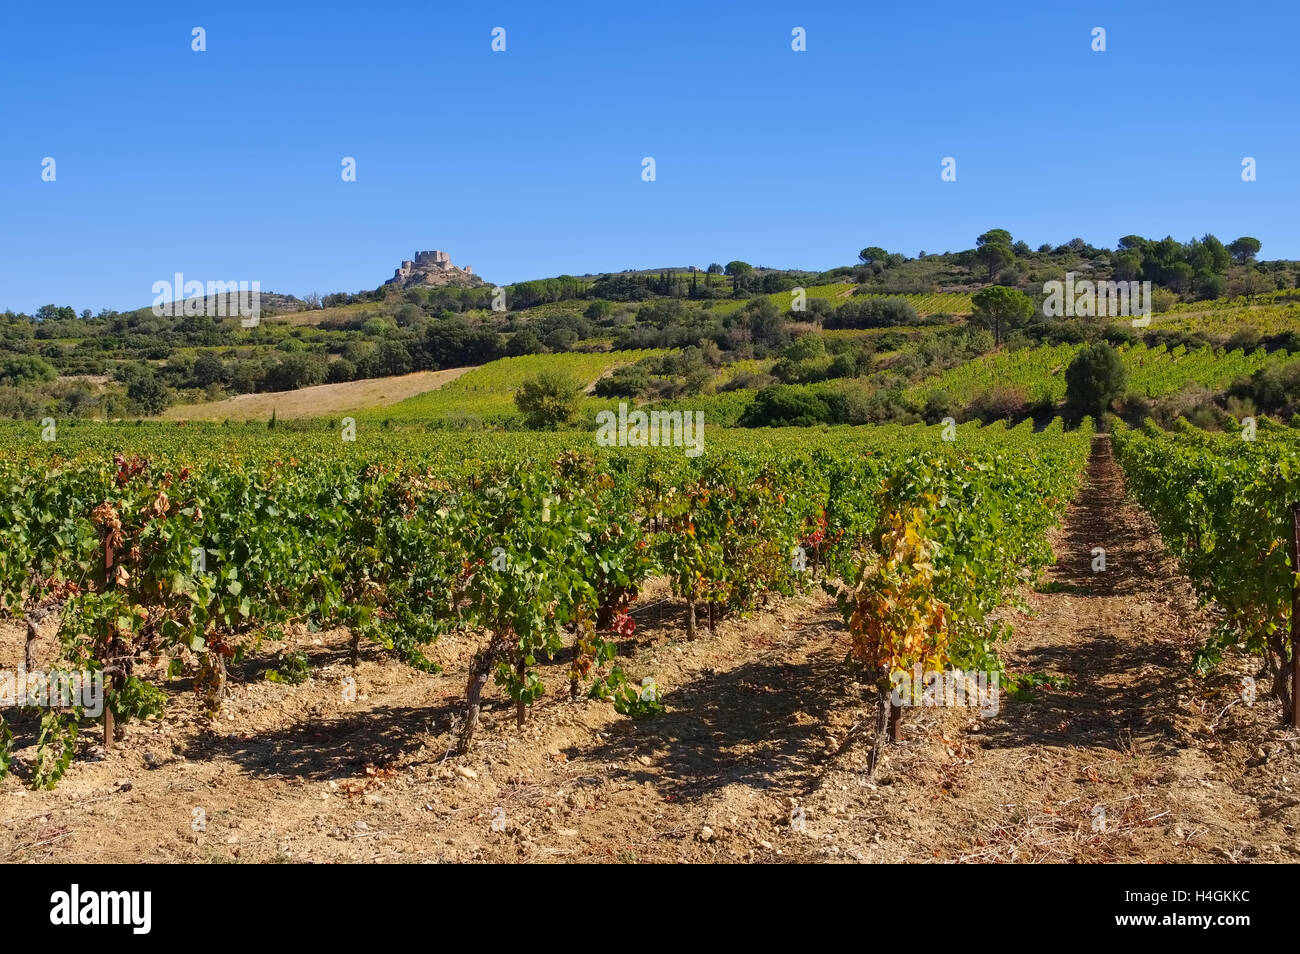 Burg Aguilar Im Süden Frankreichs - Cathare Burg Aguilar in Südfrankreich Stockfoto